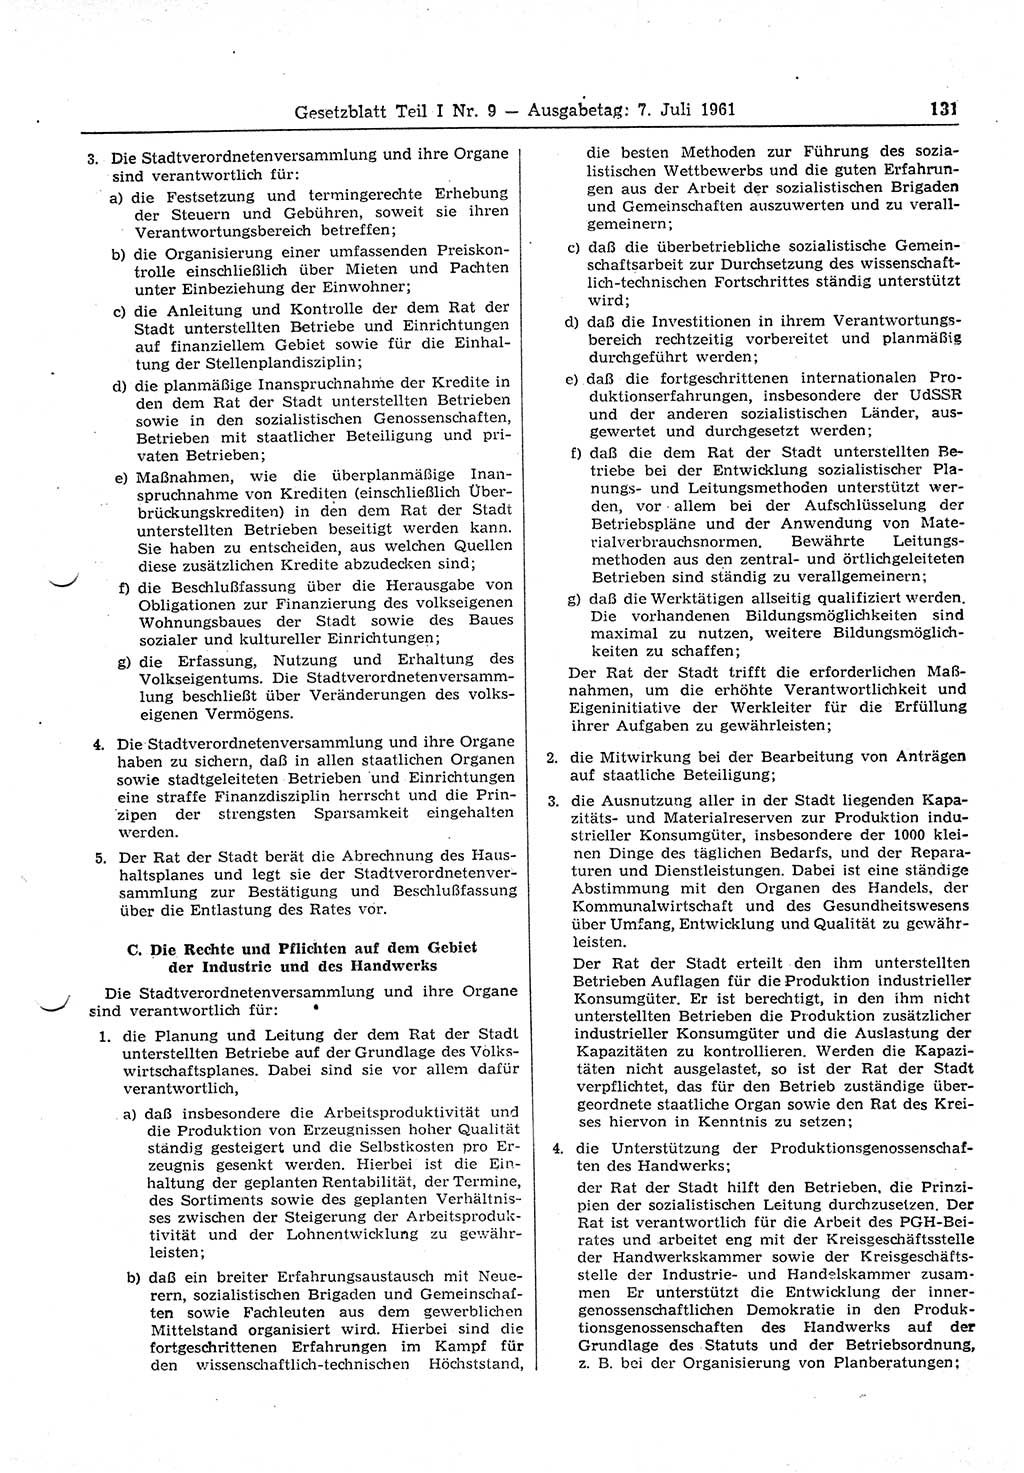 Gesetzblatt (GBl.) der Deutschen Demokratischen Republik (DDR) Teil Ⅰ 1961, Seite 131 (GBl. DDR Ⅰ 1961, S. 131)